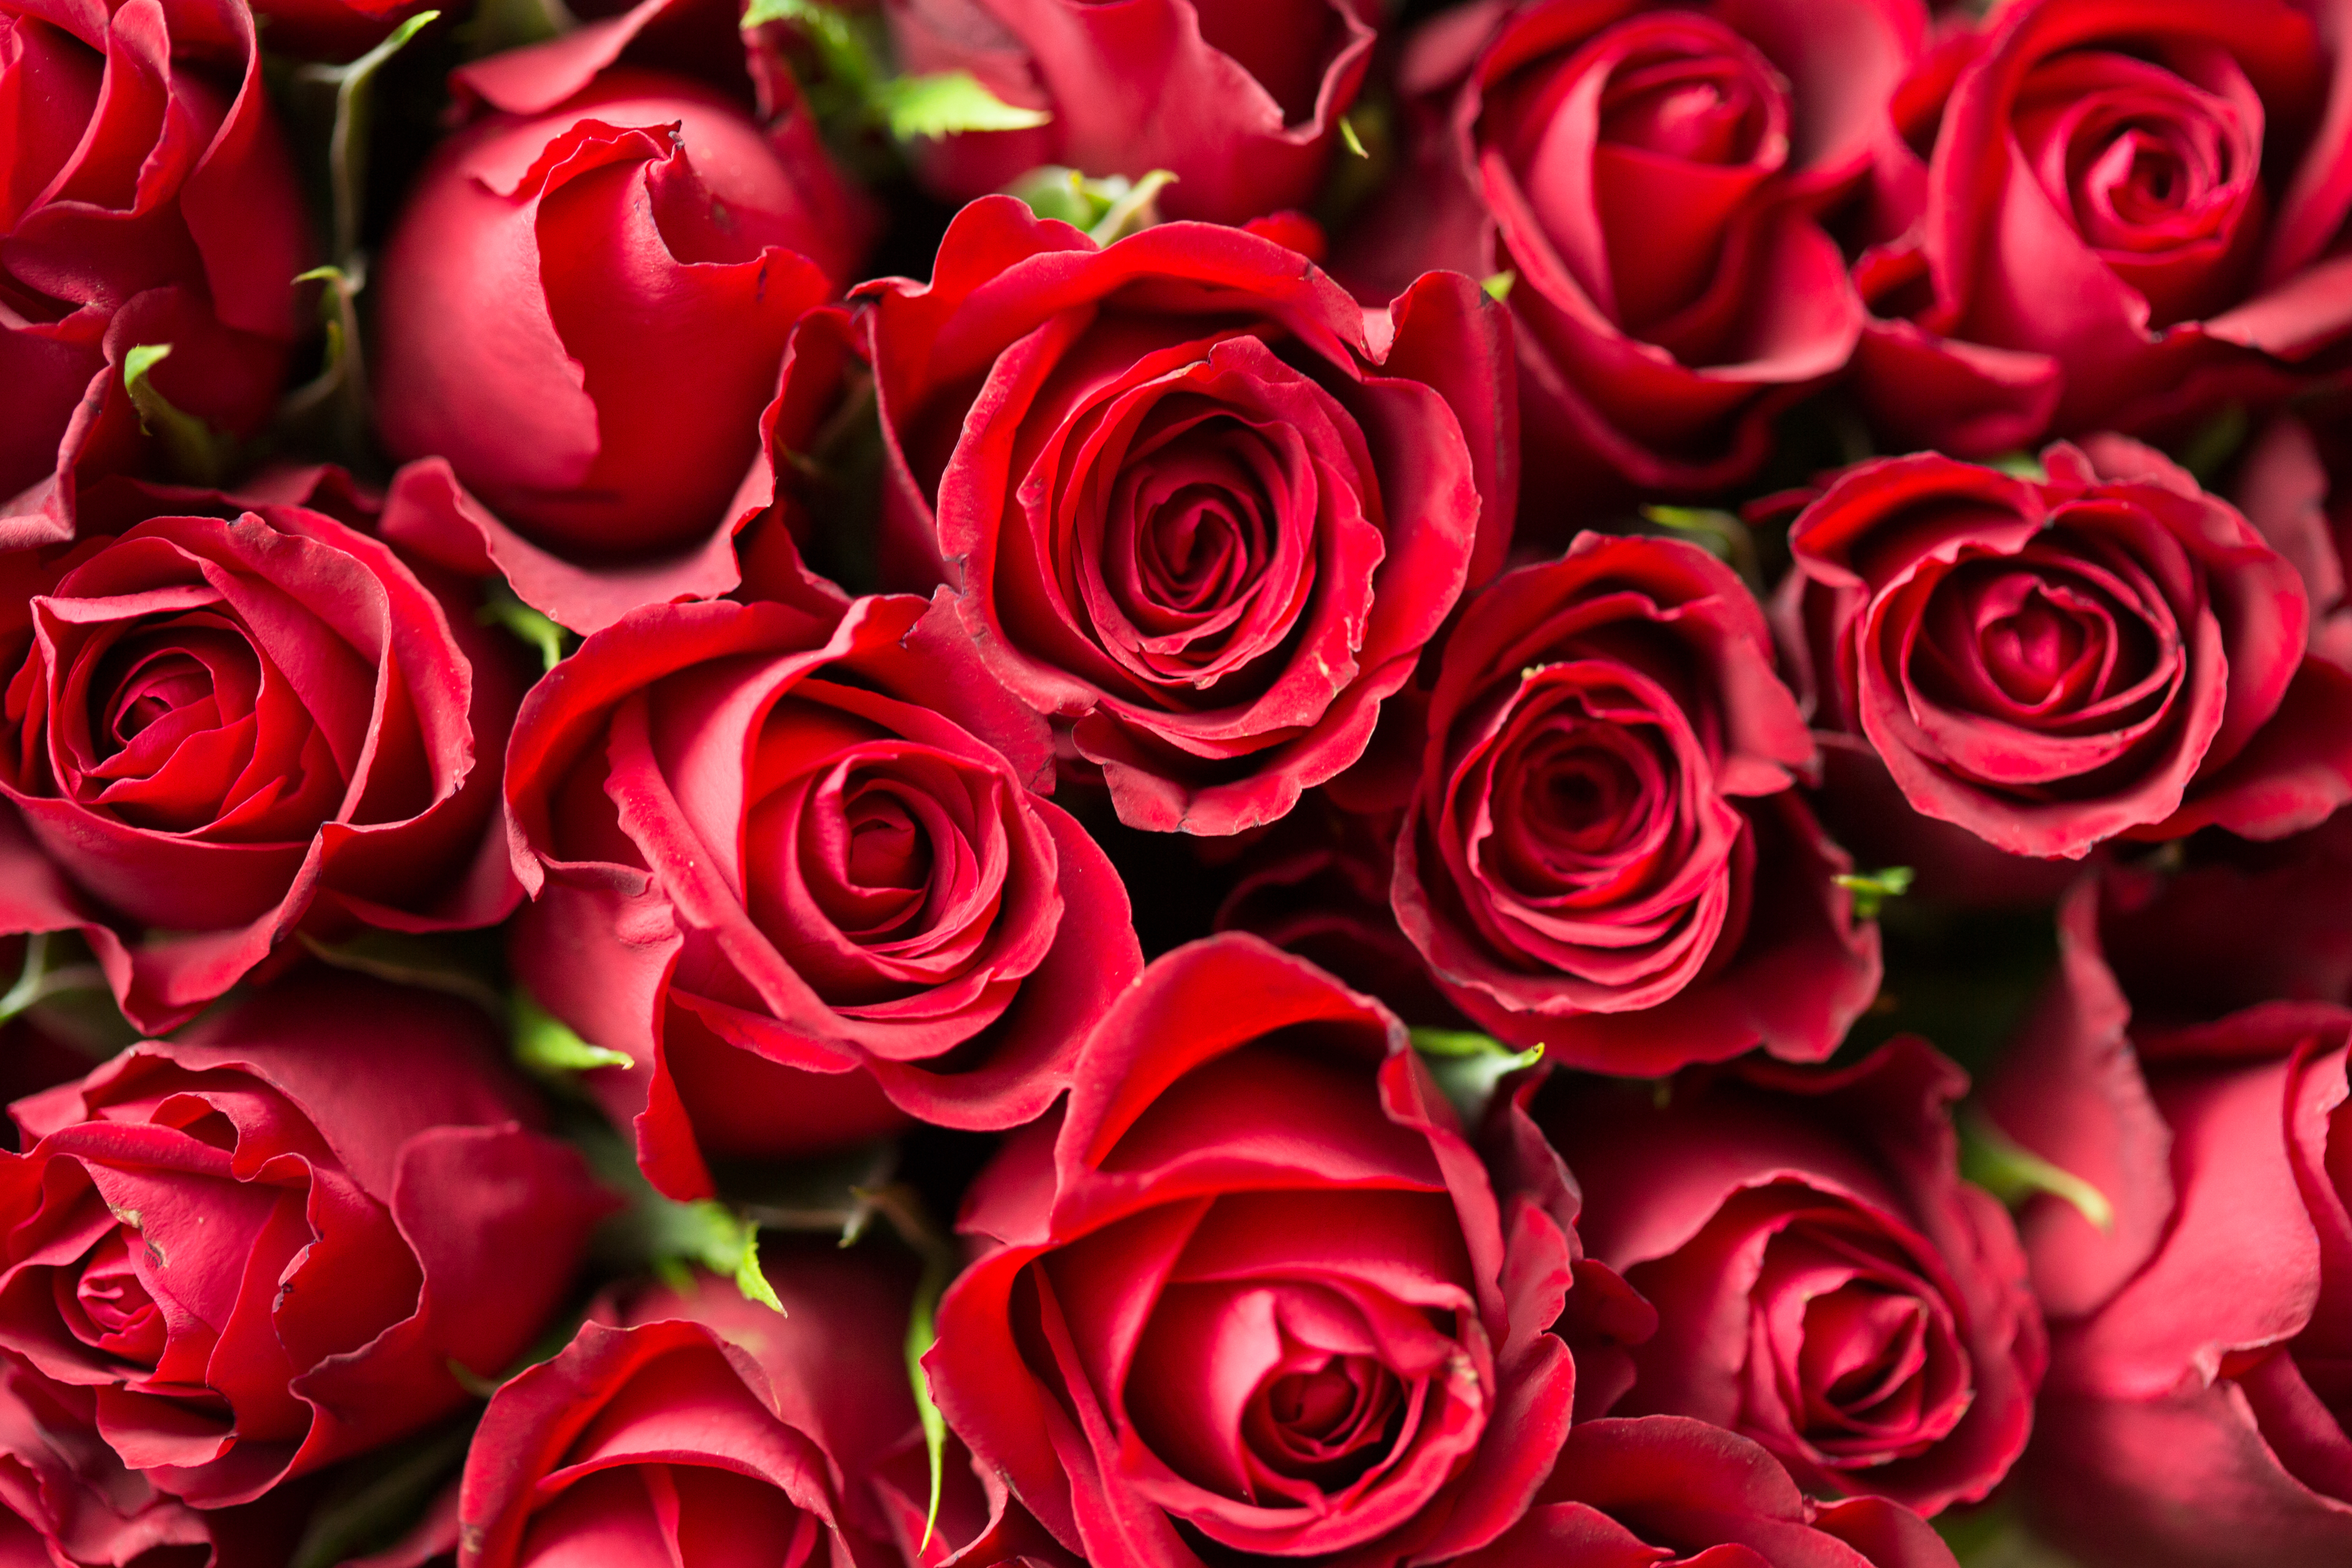 Скачать обои бесплатно Красный, Букет, Розы, Цветы картинка на рабочий стол ПК